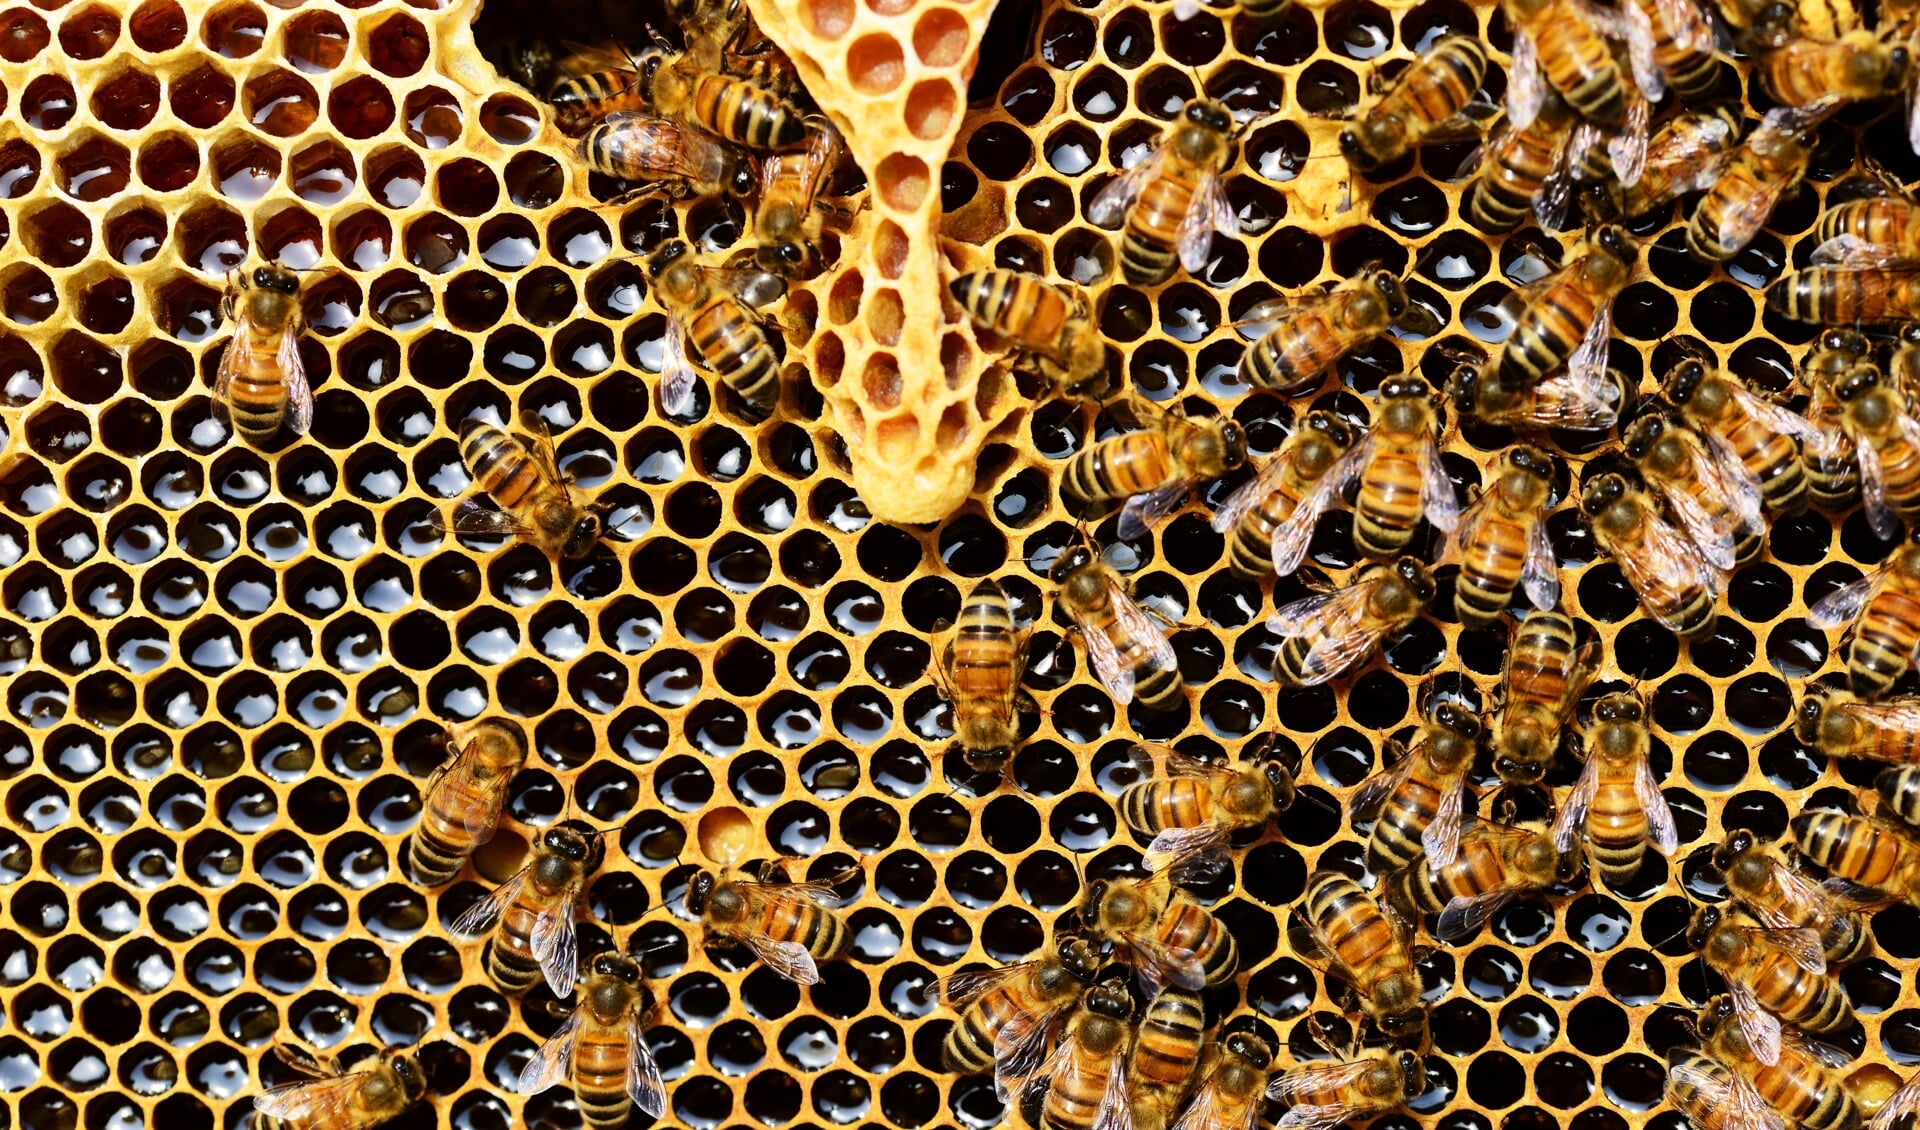 De honing is bedoeld als wintervoorraad. De imkers geven daarom suikerwater terug aan de bijen. 